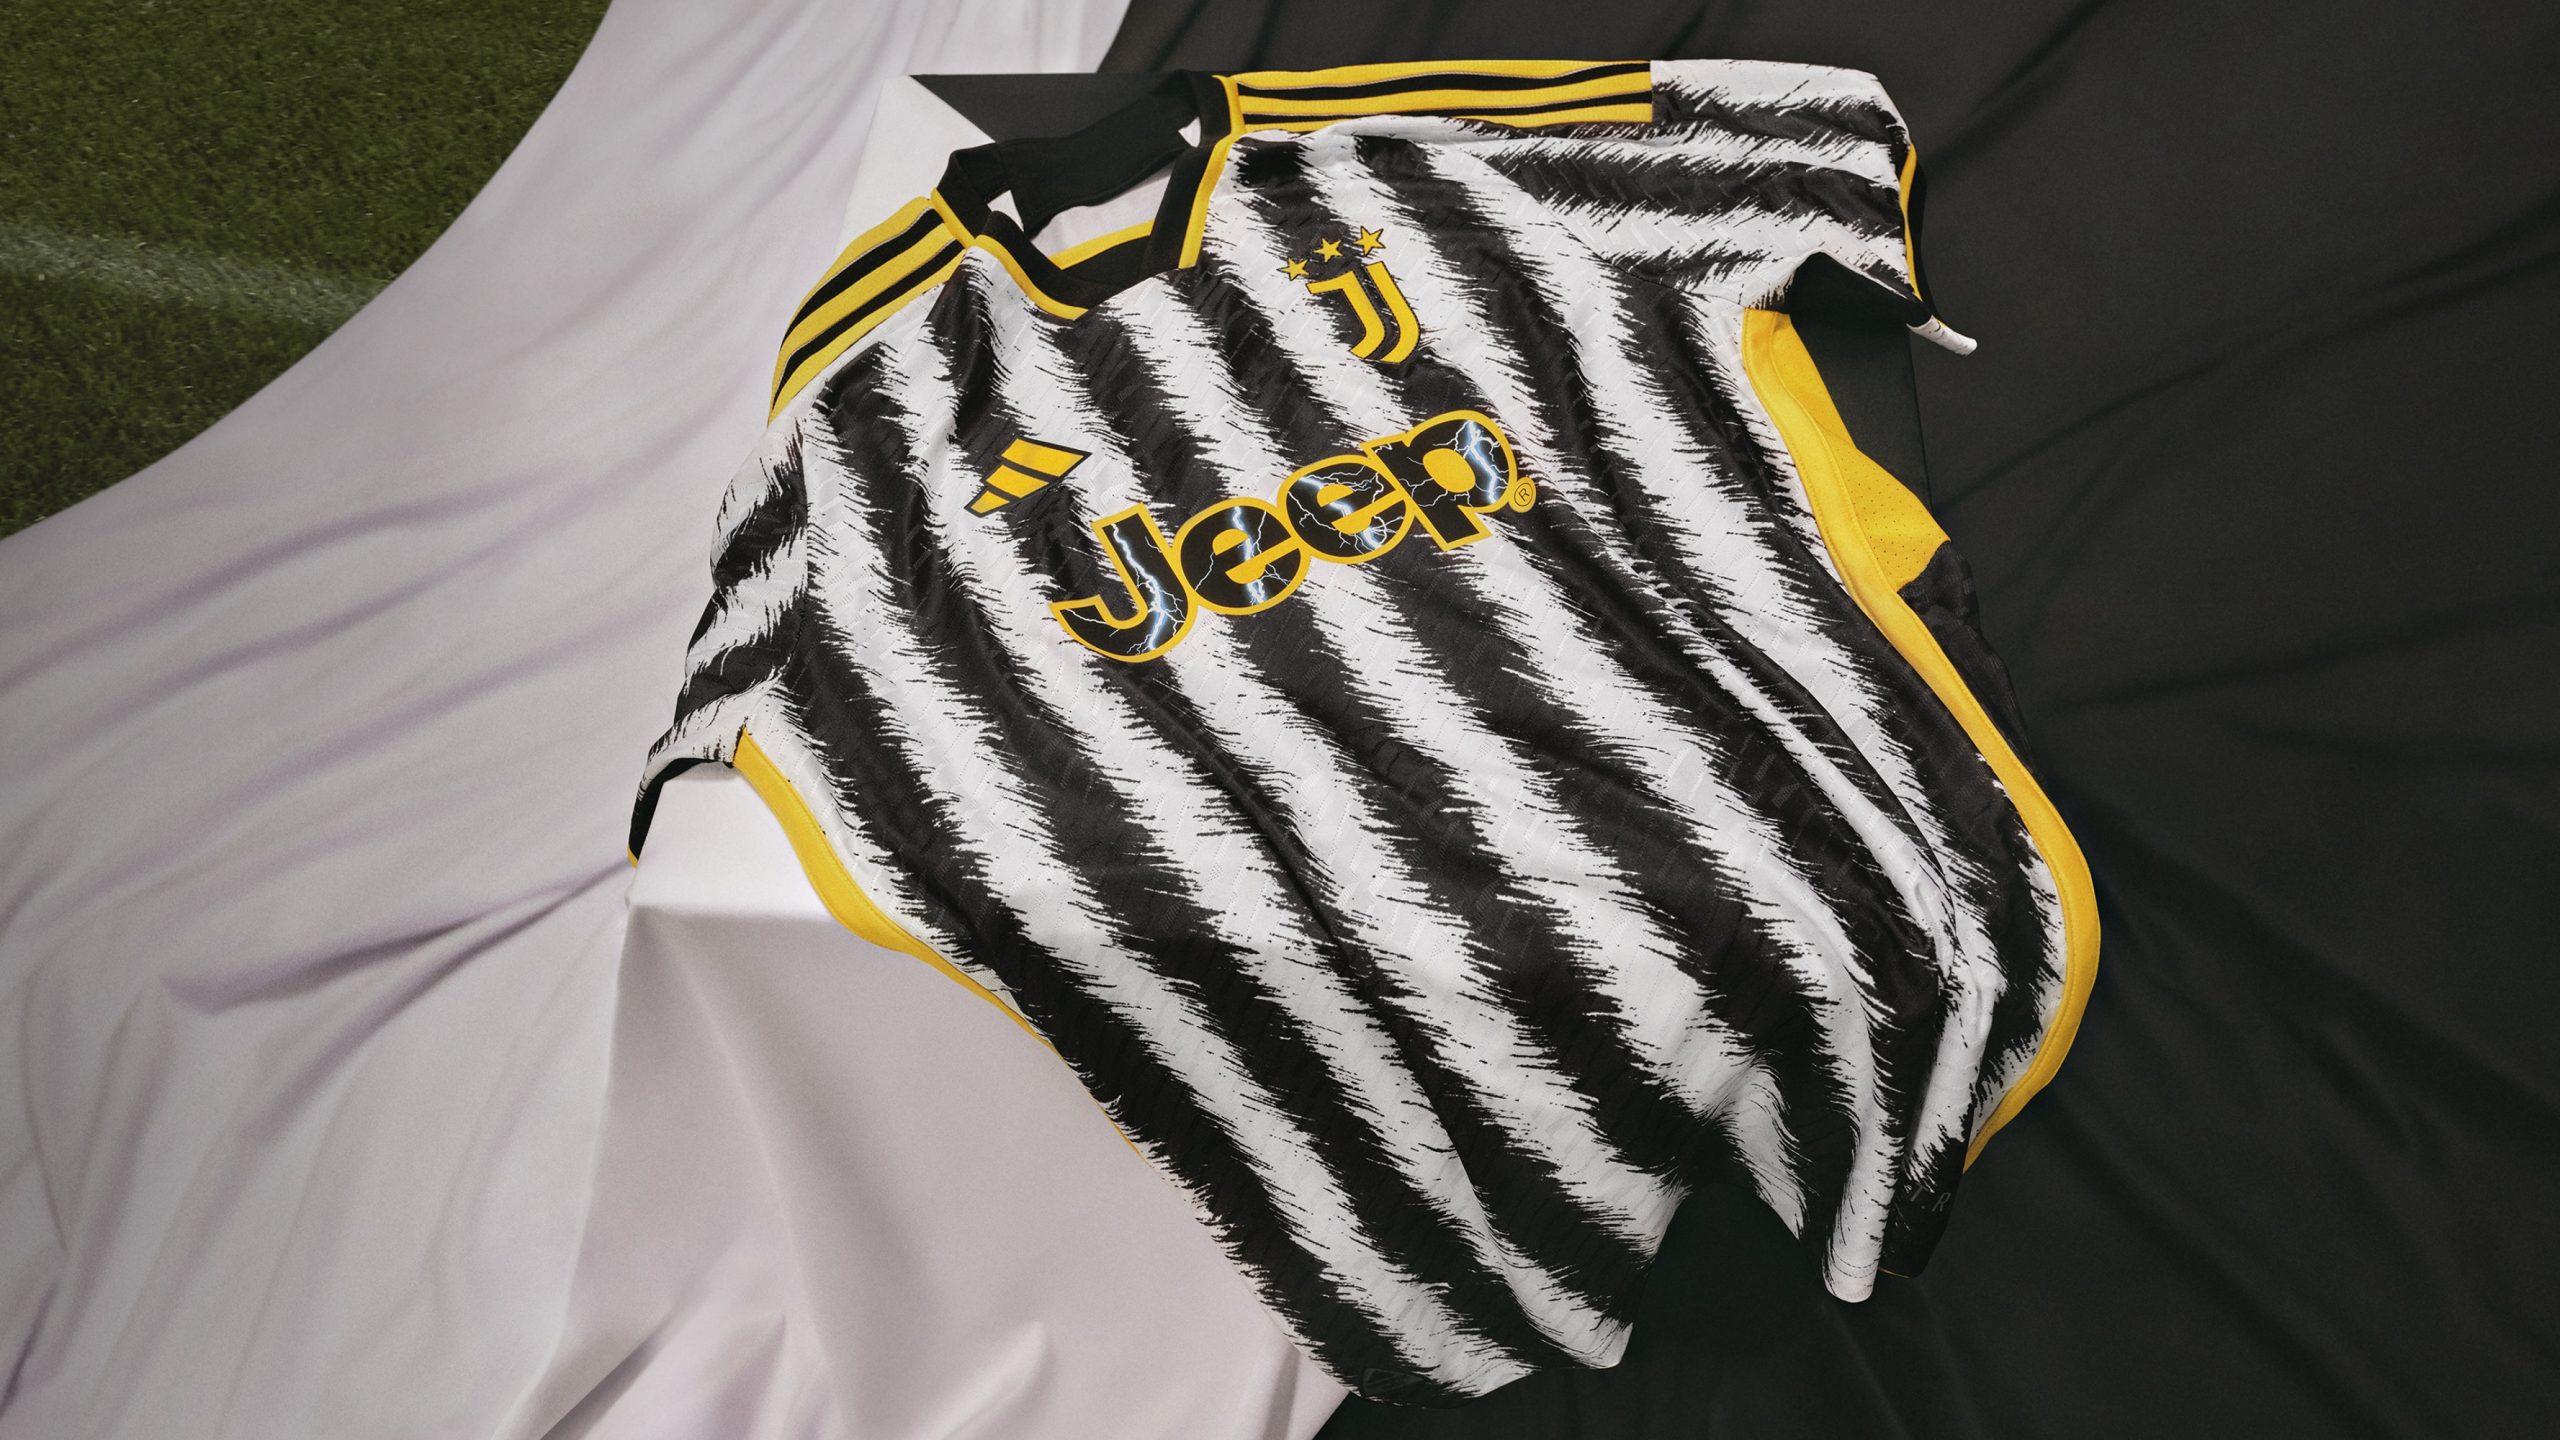 Szabad kezet adott az Adidasnak a Juventus, a zebracsíkok így már-már olyanná váltak, mintha az tényleg az állatok szőrzete lenne. Mindezt élénksárga elemek egészítik ki